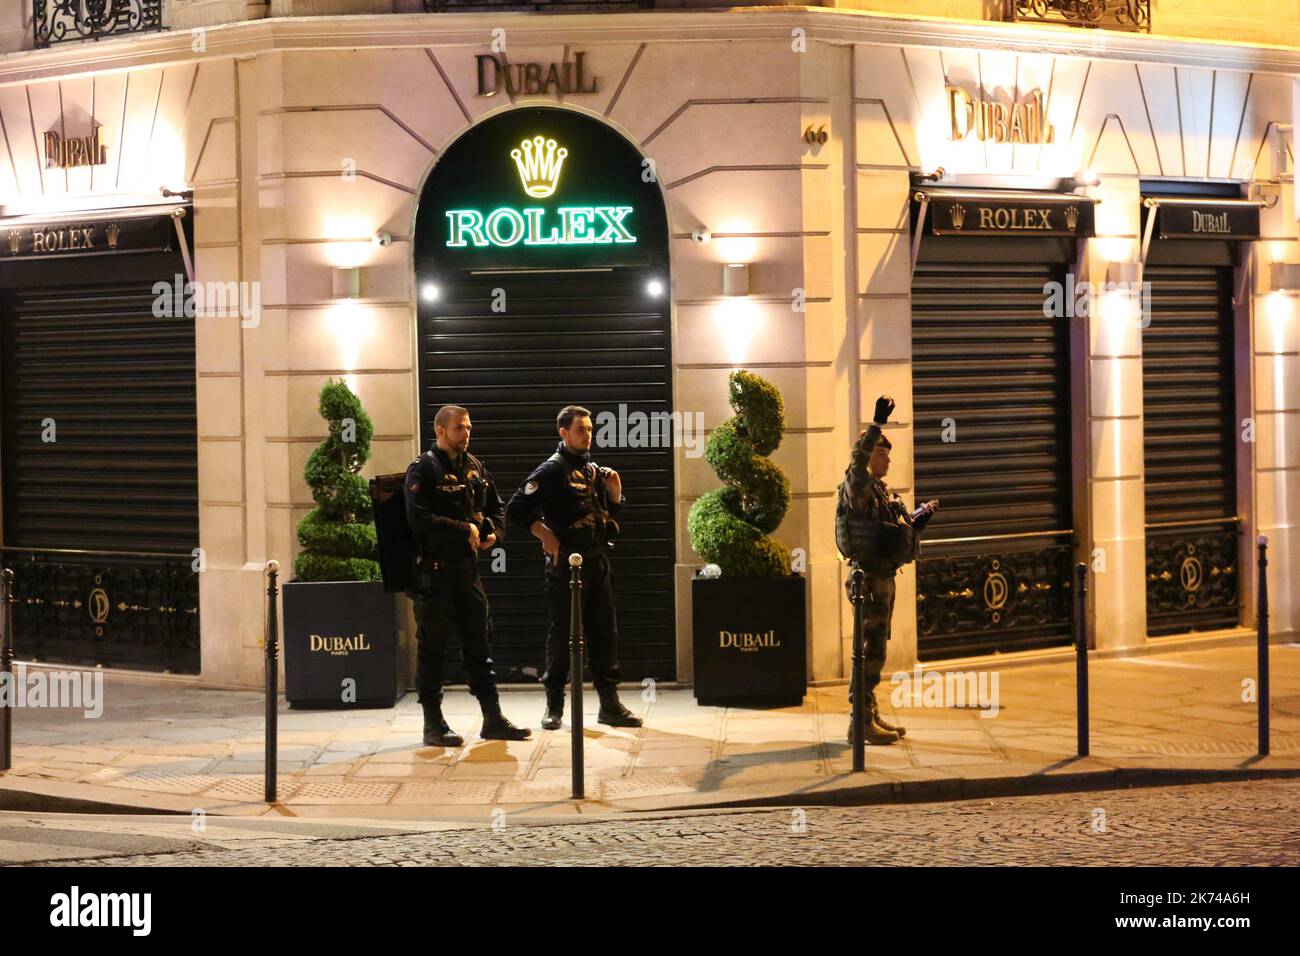 Polizeibeamte stehen nach einer Schießerei am 20. April 2017 auf den Champs Elysees in Paris Wache. Ein Polizist wurde heute bei einer Schießerei auf den Champs-Elysées in Paris getötet und ein anderer verletzt, teilte die Polizei nur wenige Tage vor den Präsidentschaftswahlen in Frankreich mit. Das französische Innenministerium sagte, dass der Angreifer bei dem Vorfall auf dem weltberühmten Boulevard, der bei Touristen beliebt ist, getötet wurde. Stockfoto